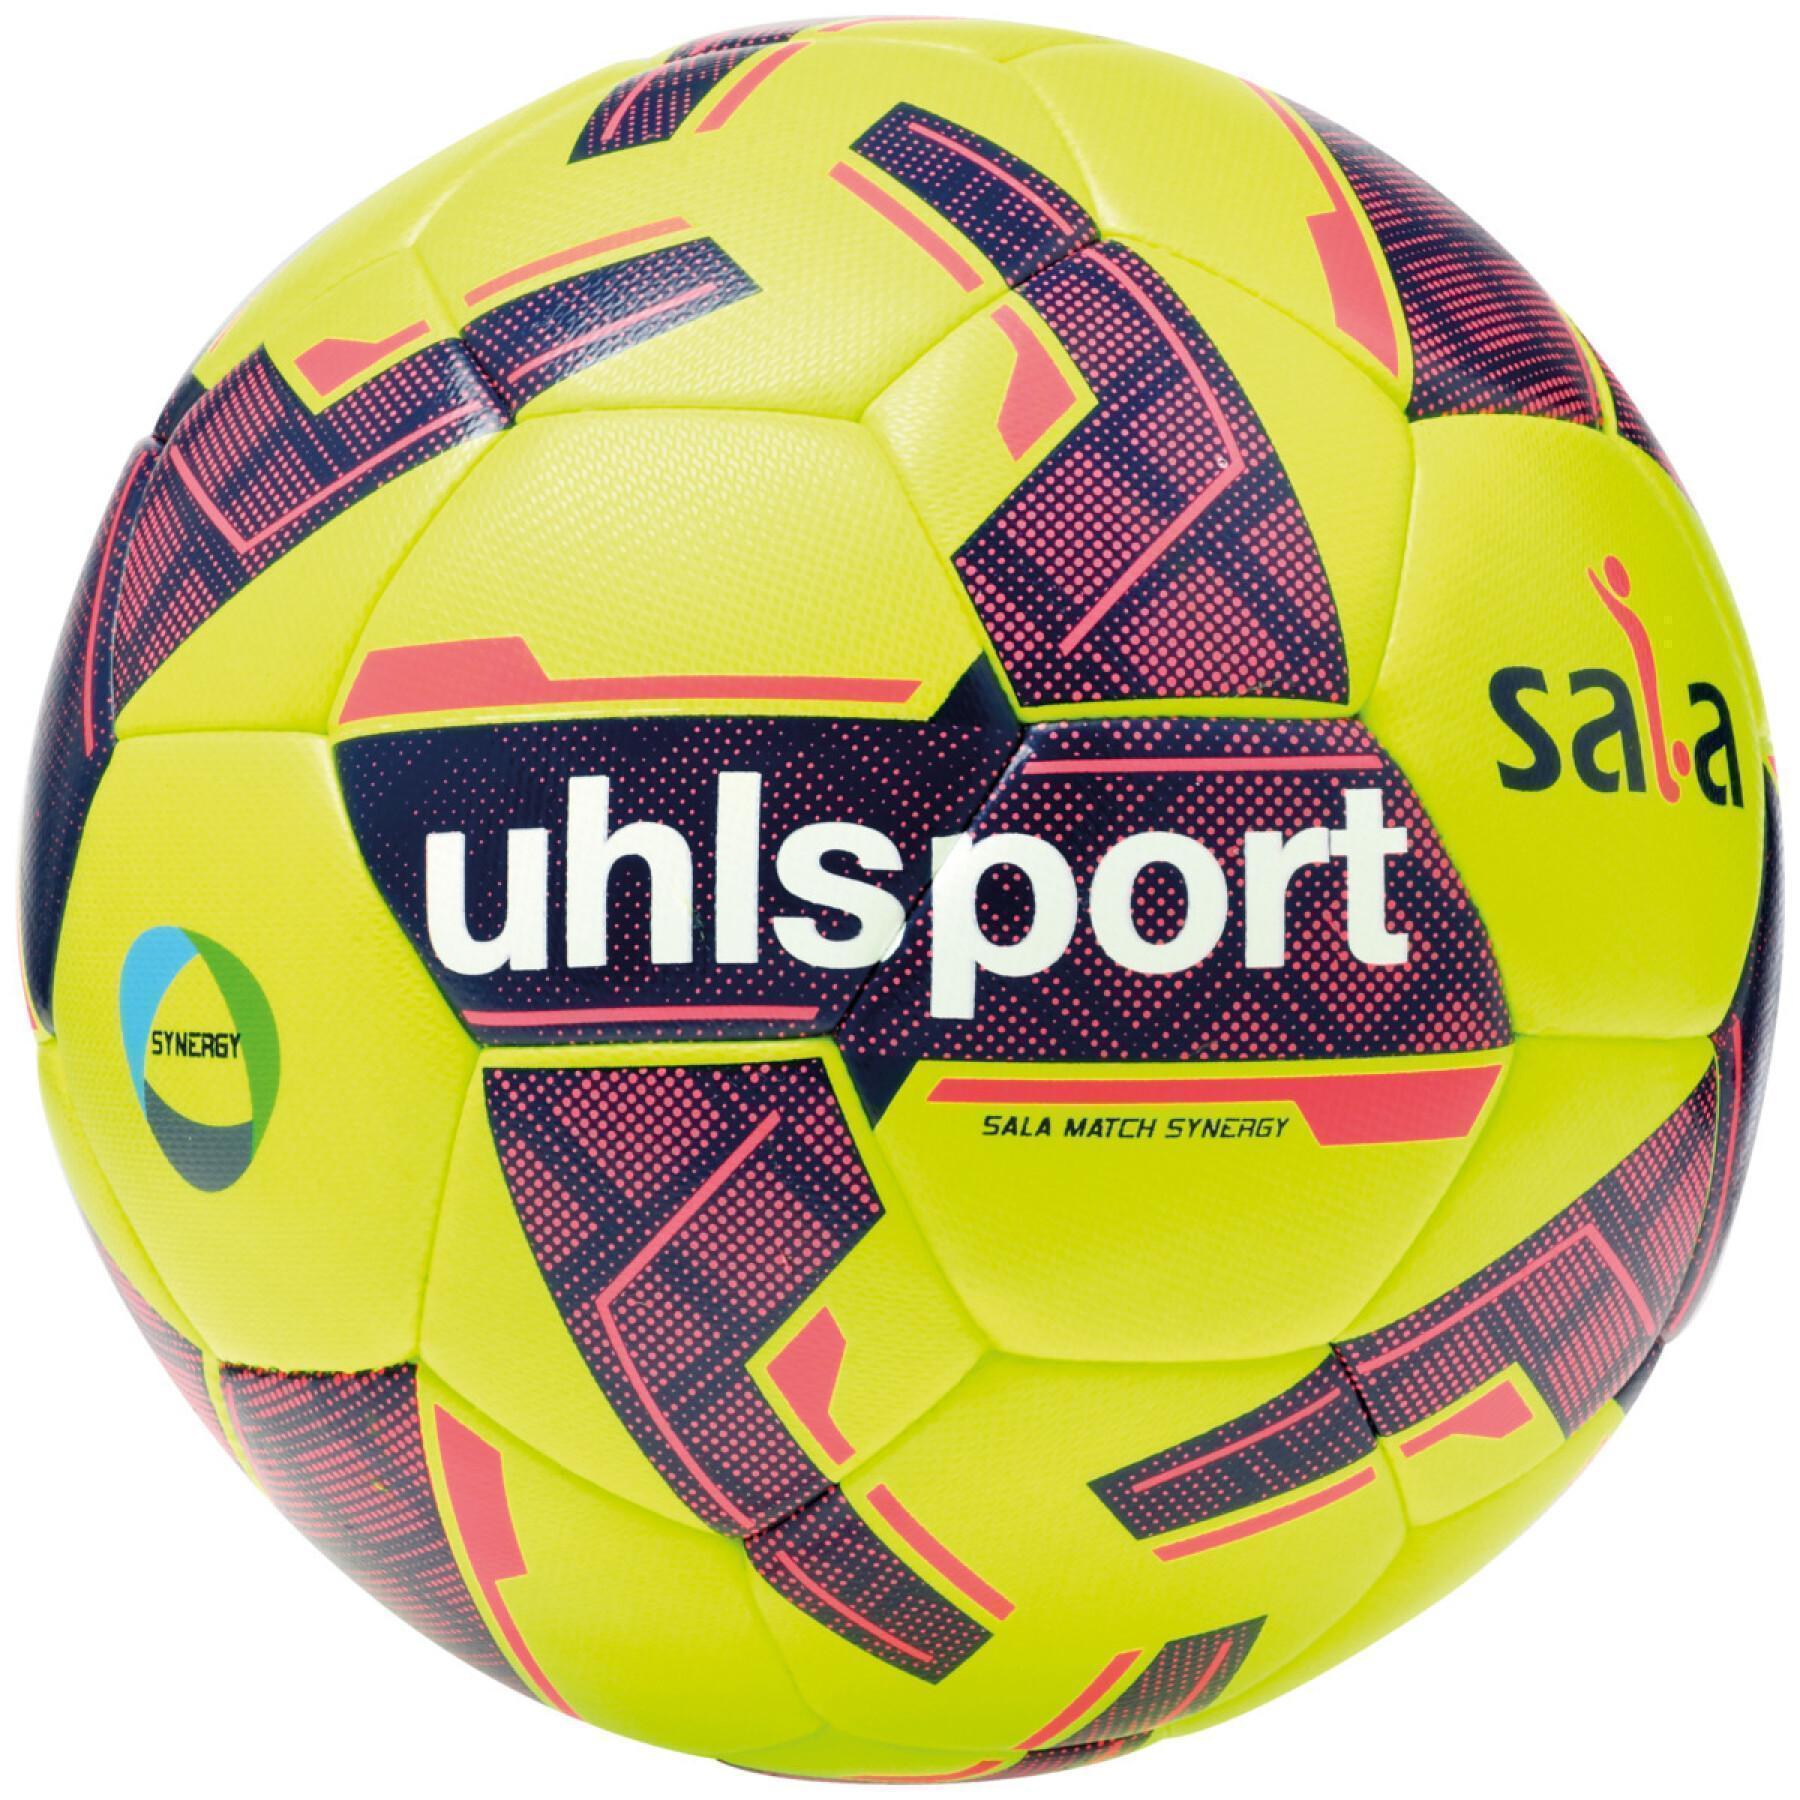 Pallone da calcio Uhlsport Sala Match Synergy